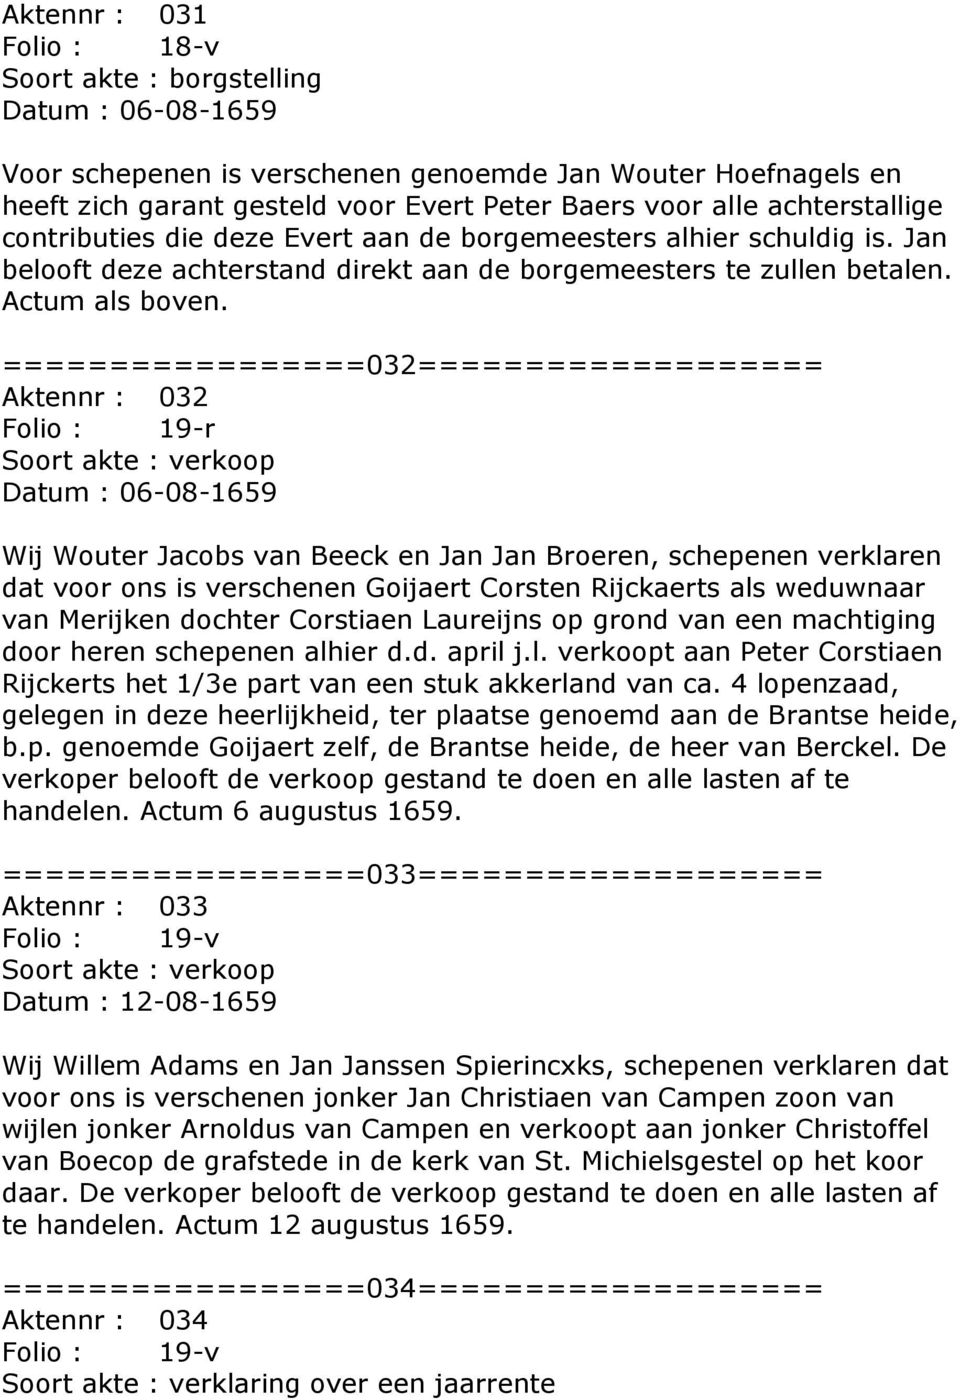 =================032=================== Aktennr : 032 Folio : 19-r Datum : 06-08-1659 Wij Wouter Jacobs van Beeck en Jan Jan Broeren, schepenen verklaren dat voor ons is verschenen Goijaert Corsten